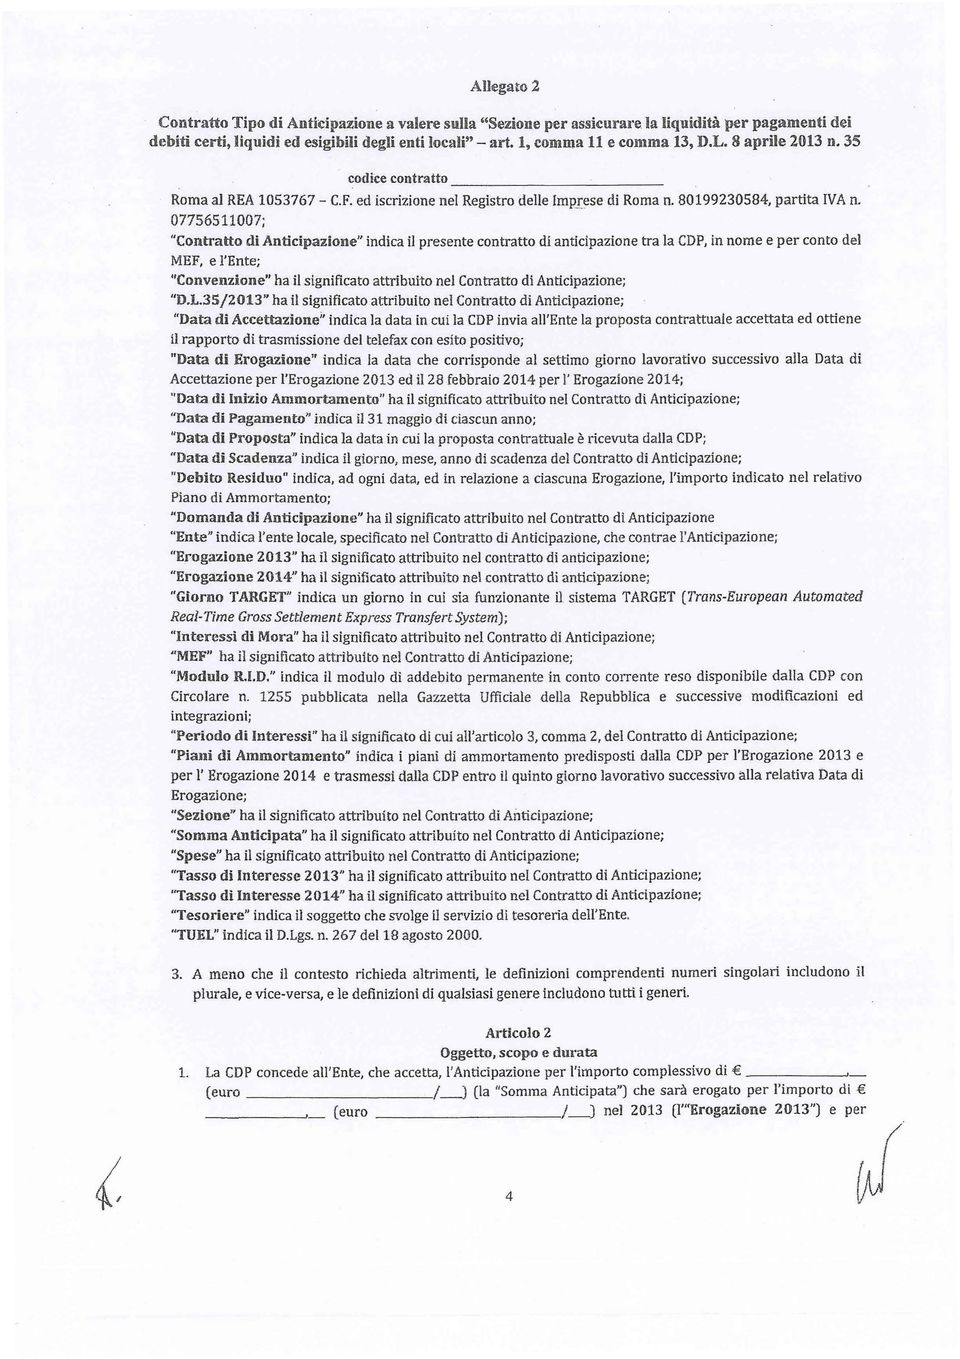 07756511007; "Contratto di Anticipazione" indica il presente contratto di anticipazione tra la CDP, in nome e per conto del MEF, e l'ente; ''Convenzione" ha il significato attribuito nel Contratto di